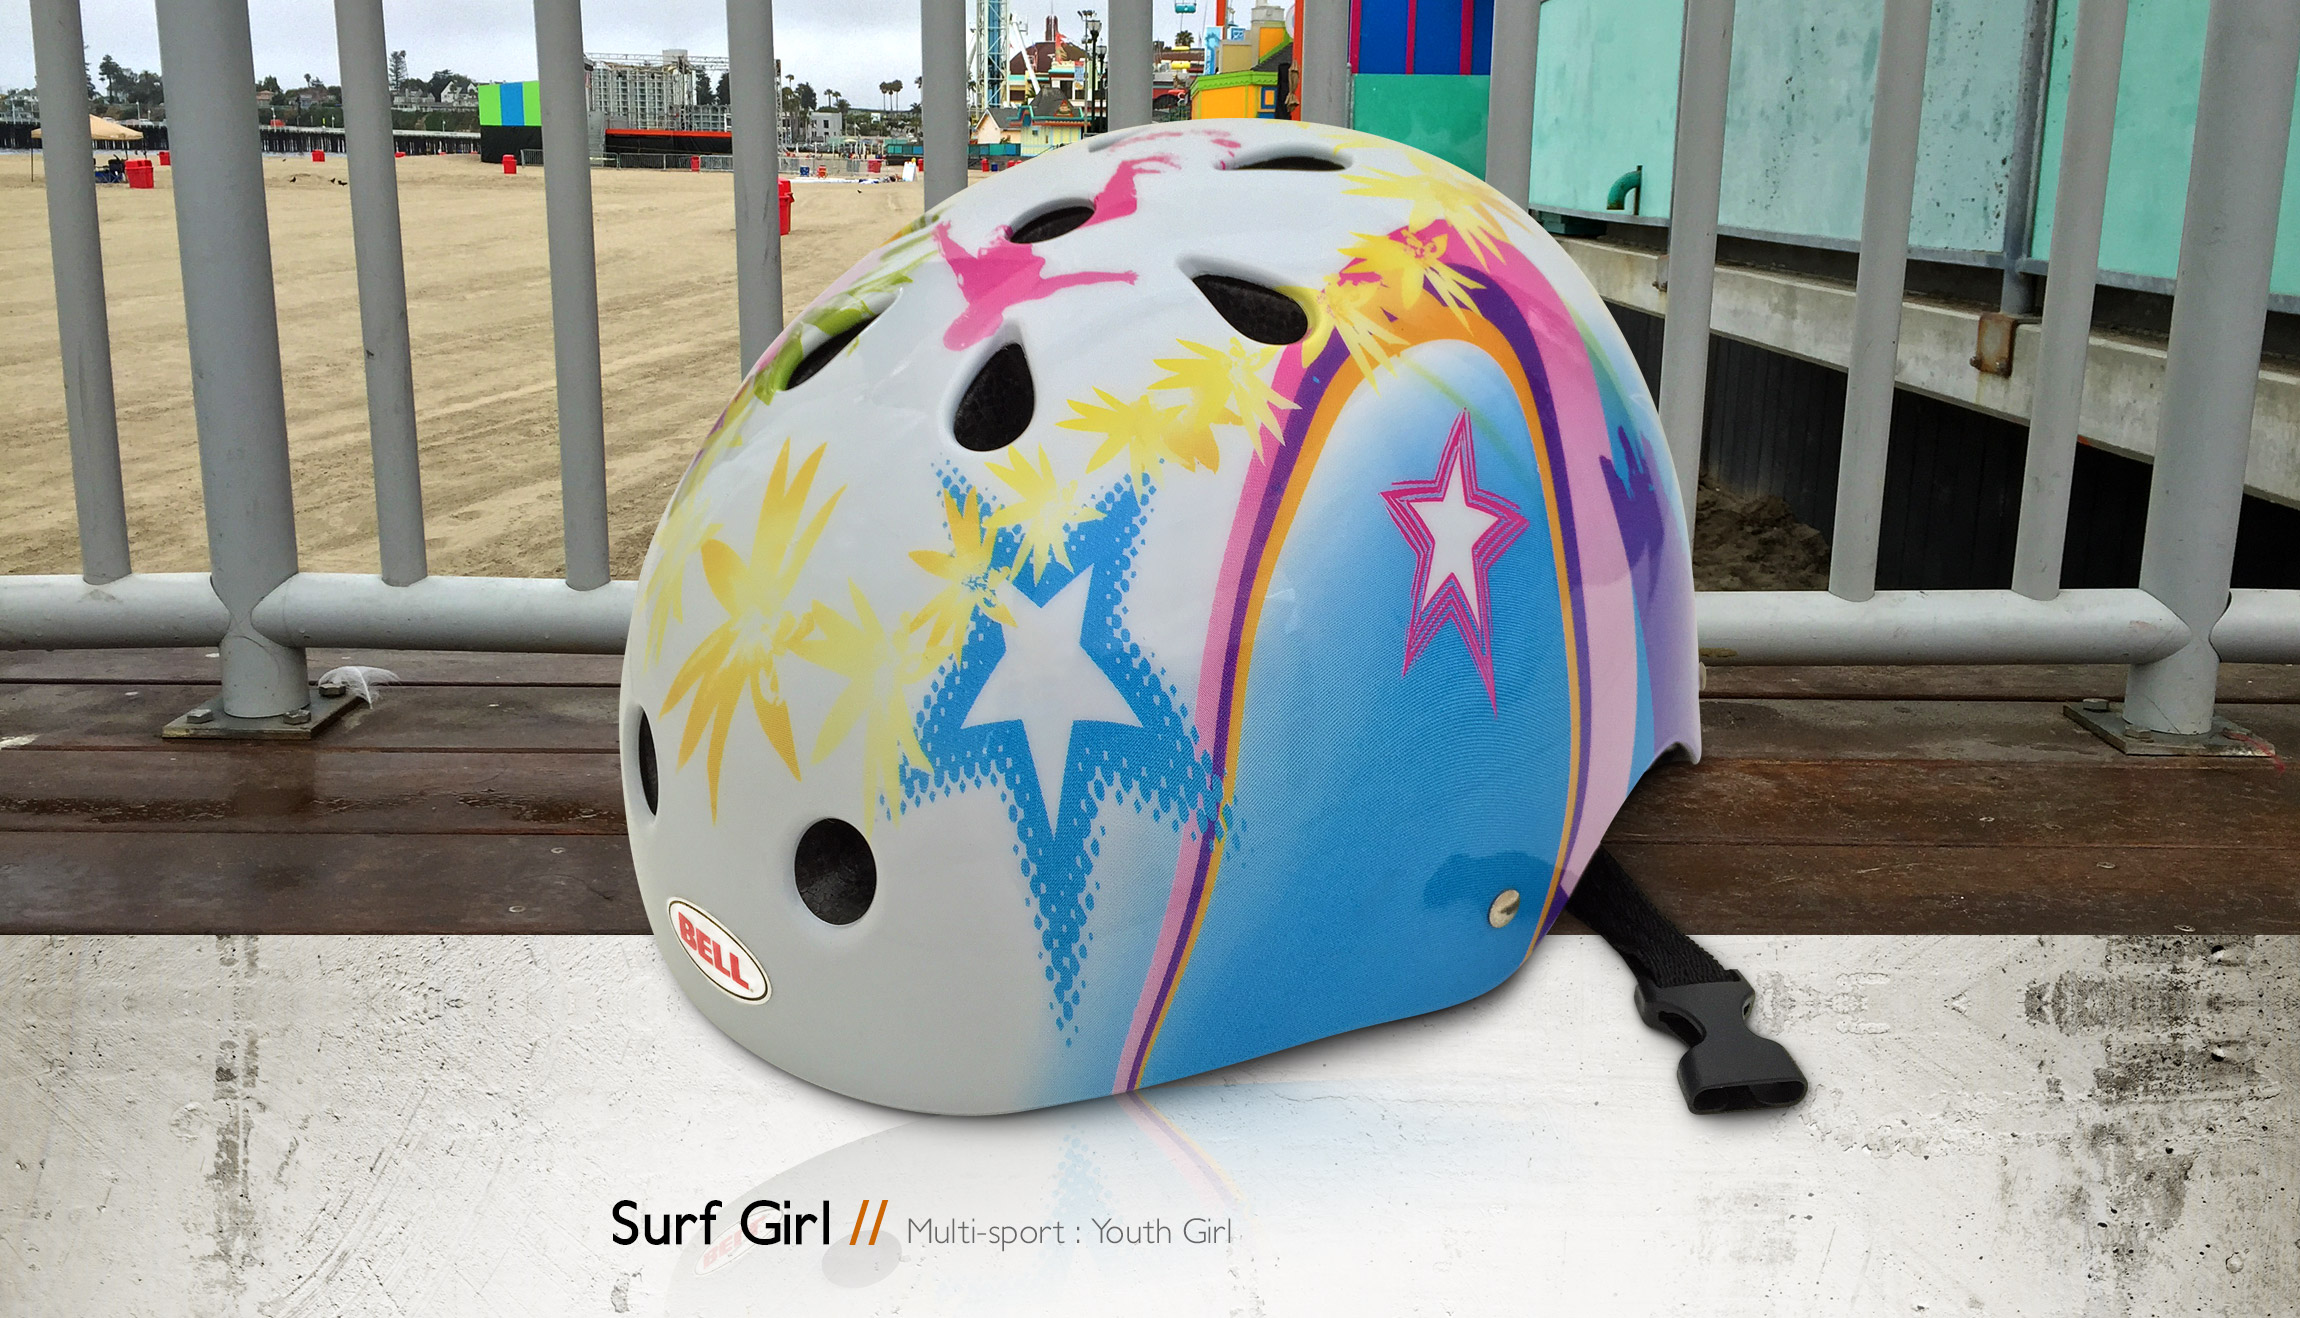 Bell Helmets Surf Girl multi-sport youth girl bike & skate helmet design - Graphic Regime